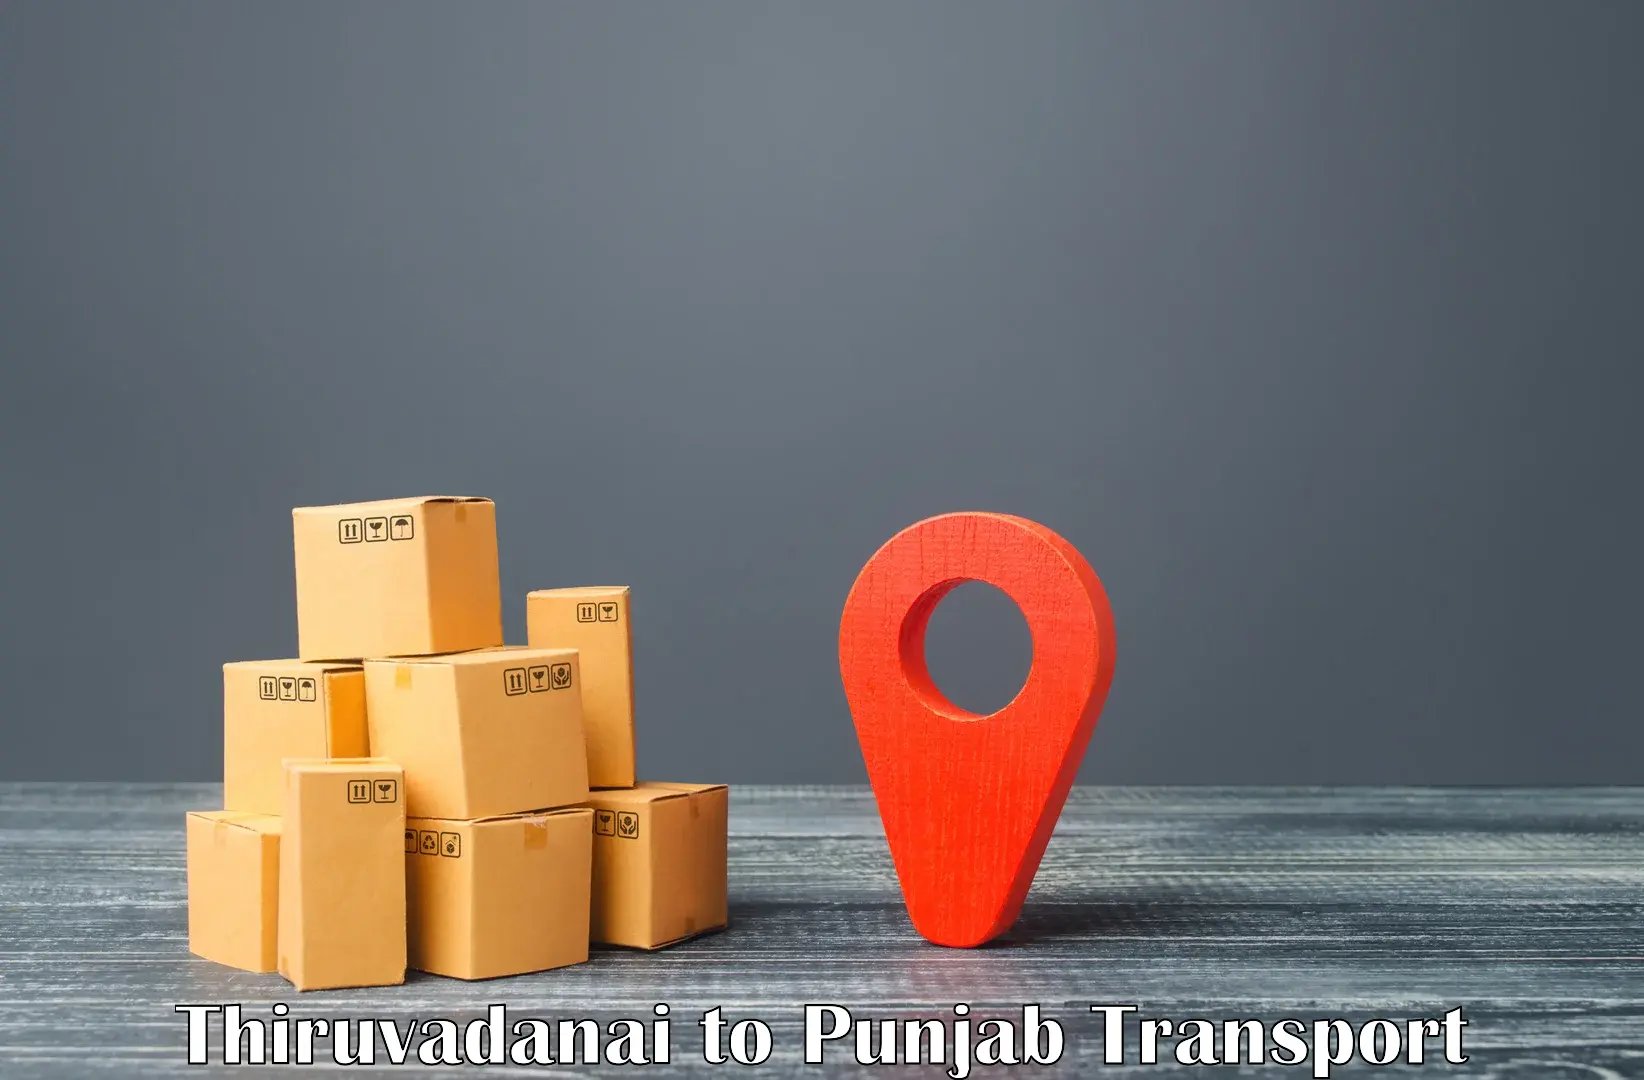 Goods delivery service Thiruvadanai to Punjab